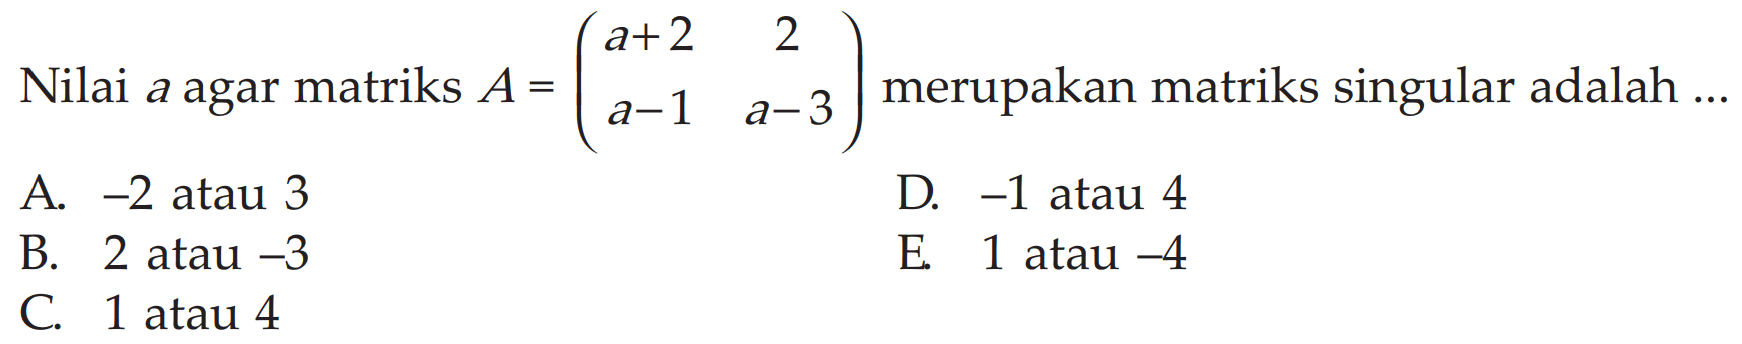 Nilai a agar matriks A=(a+2 2 a-1 a-3) merupakan matriks singular adalah ... A. -2 atau 3 D. -1 atau 4 B. 2 atau -3 E. 1 atau -4 C. 1 atau 4